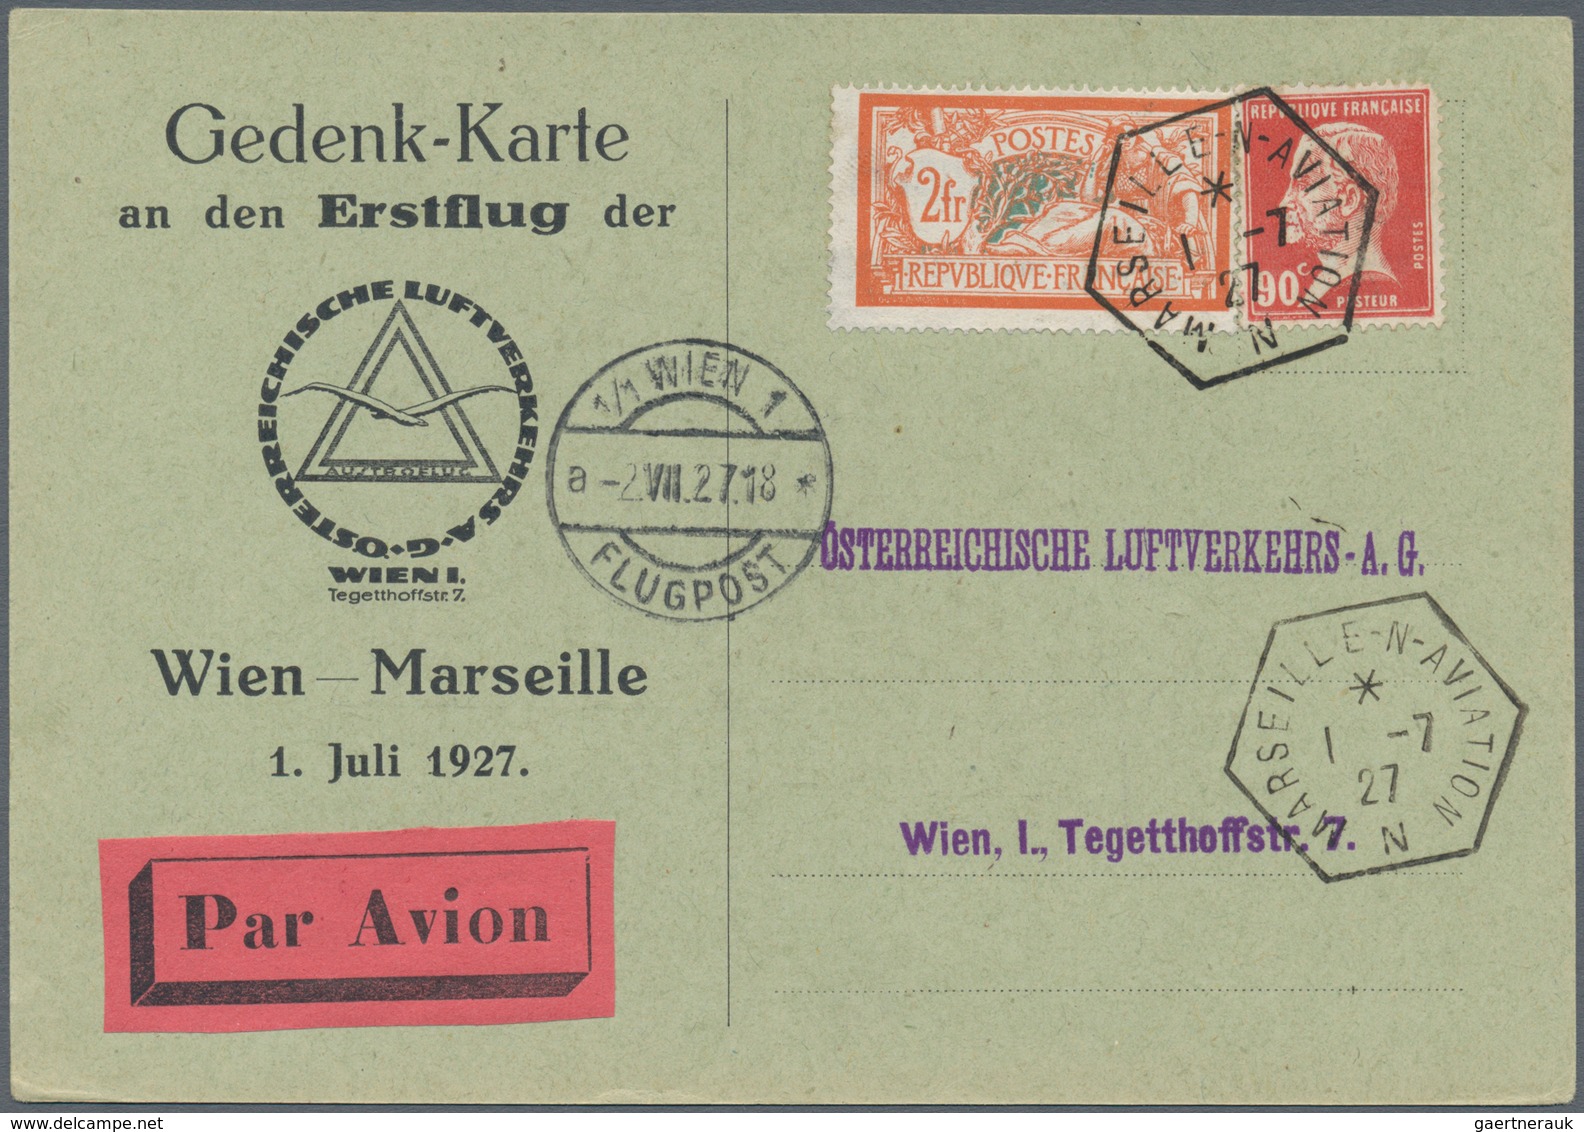 Österreich - Flugpost: 1918/1938, gehaltvolle Sammlung mit über 250 Flugpostbelegen, chronologisch s